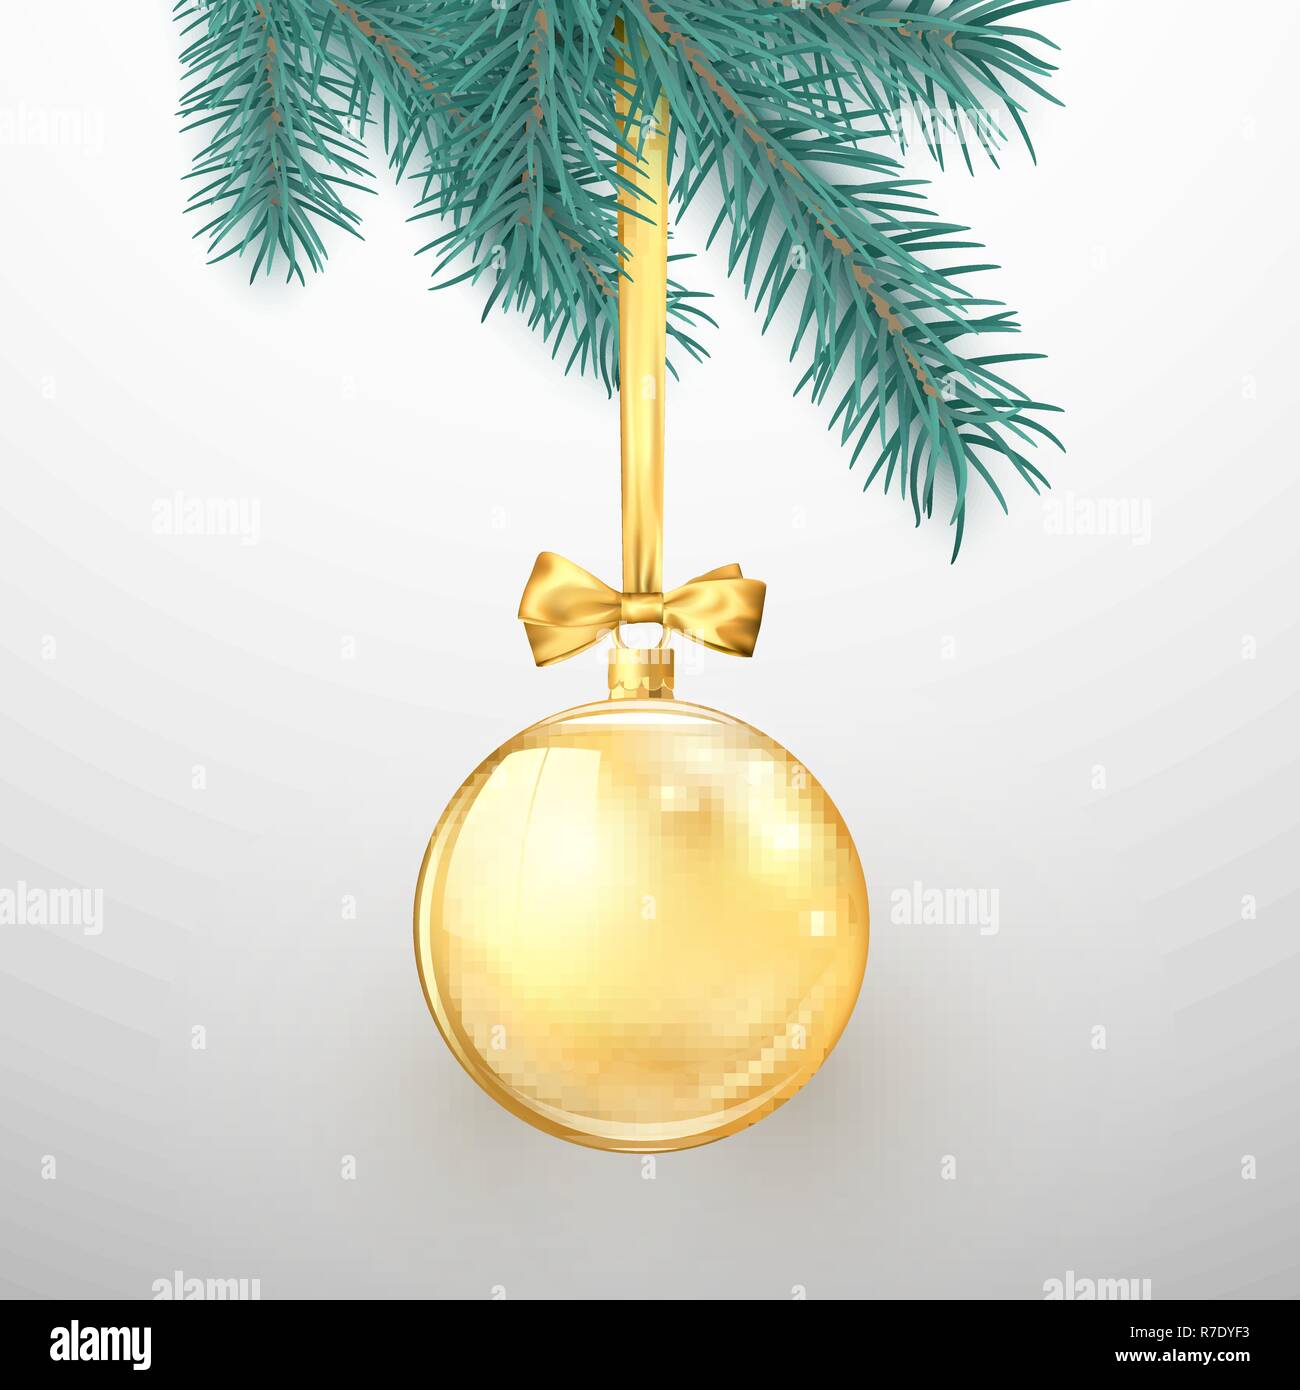 Frohe Weihnachten und guten Rutsch ins neue Jahr. Urlaub Dekoration Elemente. Golden glitter Christmas Ball mit Gold Band und Bogen hängen am Baum. Vect Stock Vektor